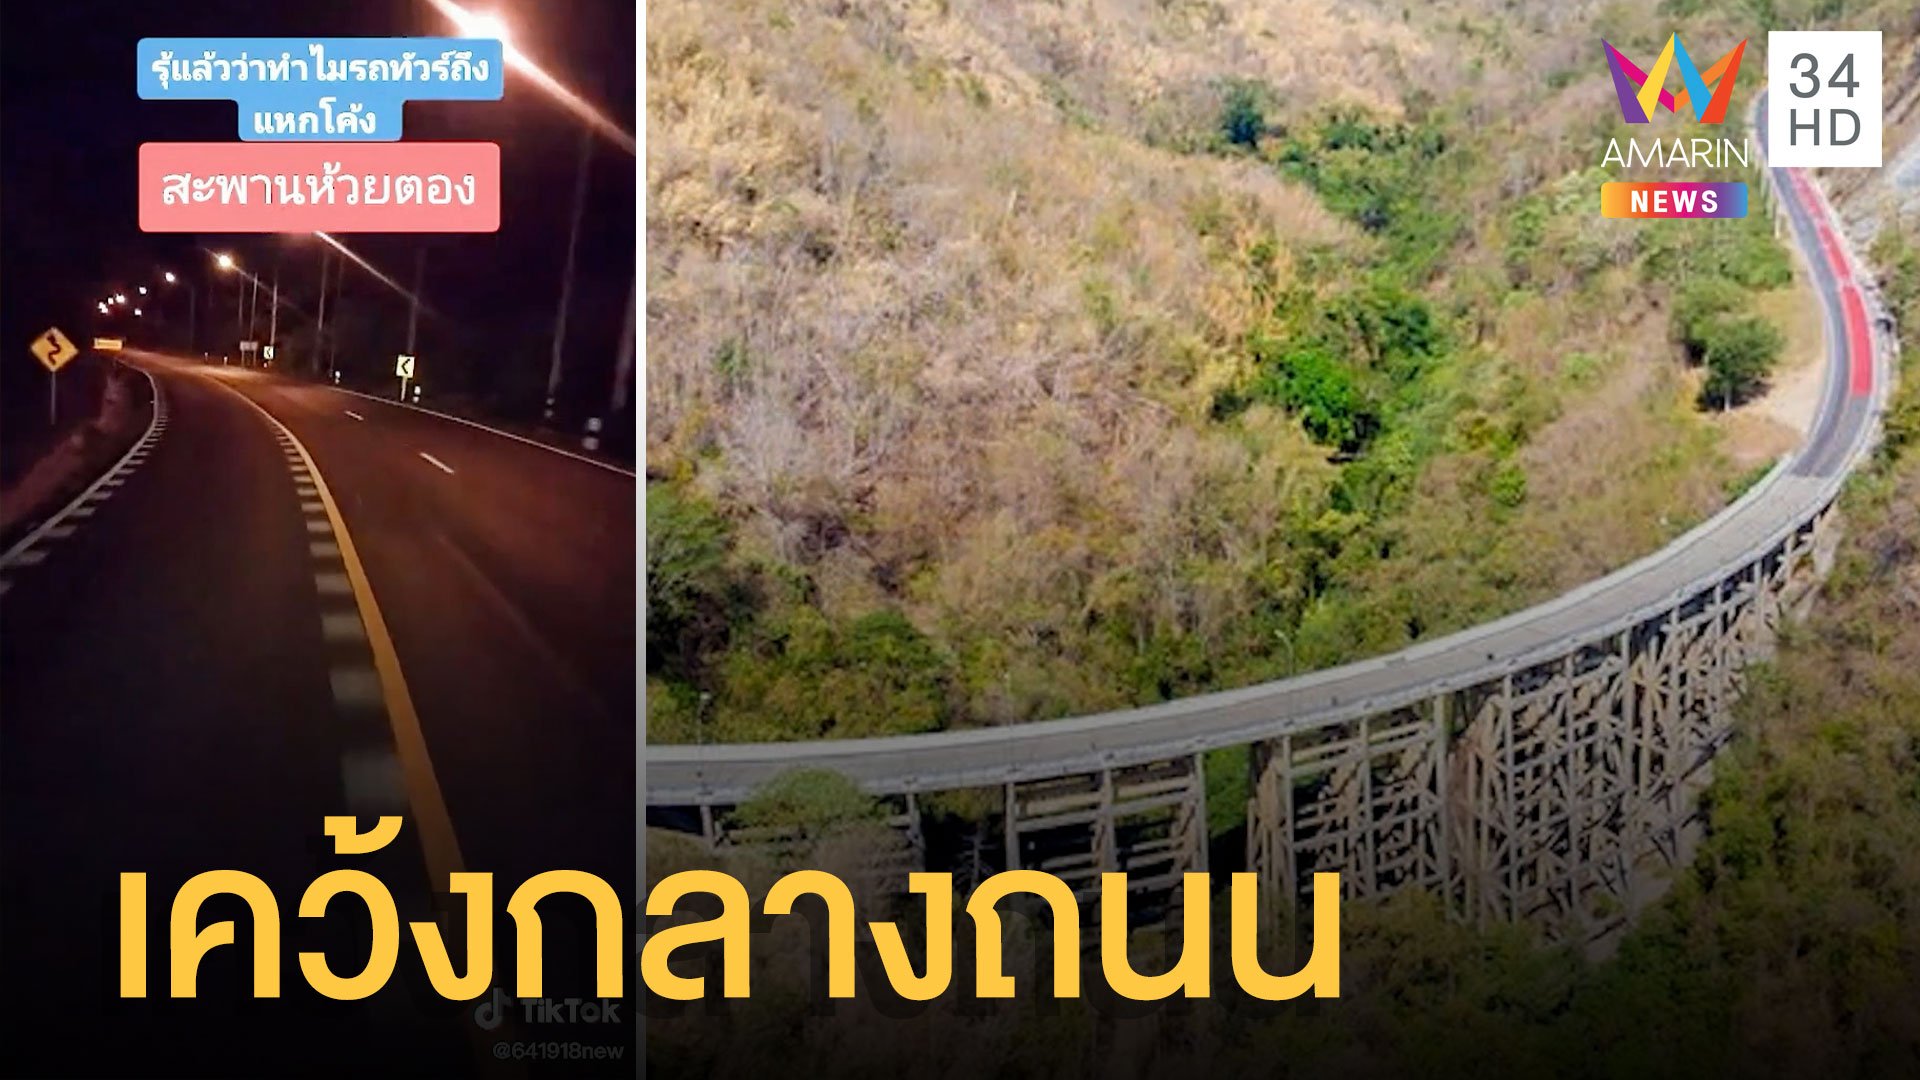 รถพ่วงสะดุดคอสะพานลอยเคว้งกลางถนนบนสะพานห้วยตอง | ข่าวอรุณอมรินทร์ | 29 มิ.ย. 65 | AMARIN TVHD34